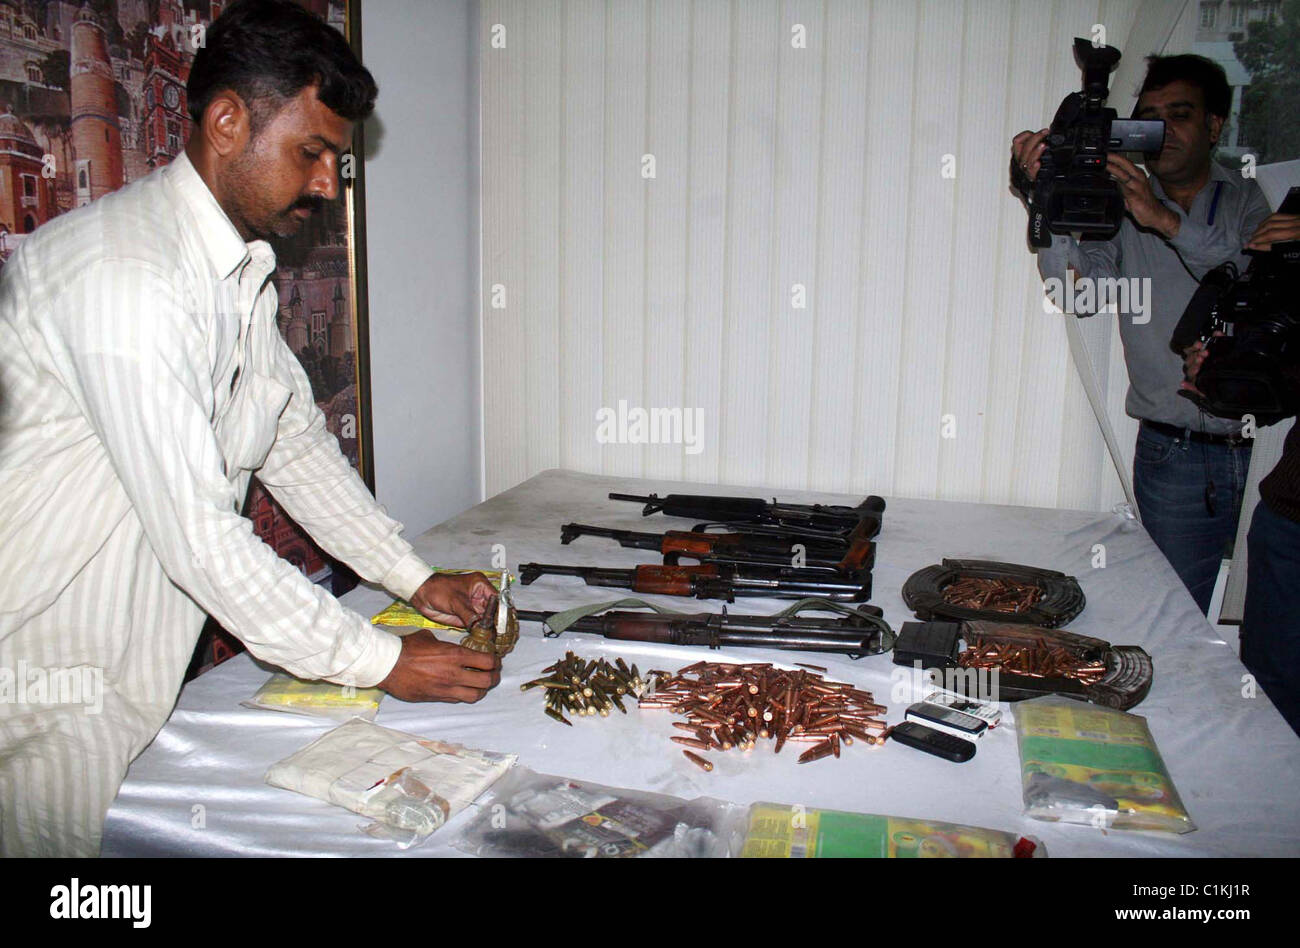 Plain-Tuch Polizist zeigt beschlagnahmten Handgranaten, Waffen, Kugeln, Drogen (Haschisch) Pakete und Handys die Recover waren Stockfoto